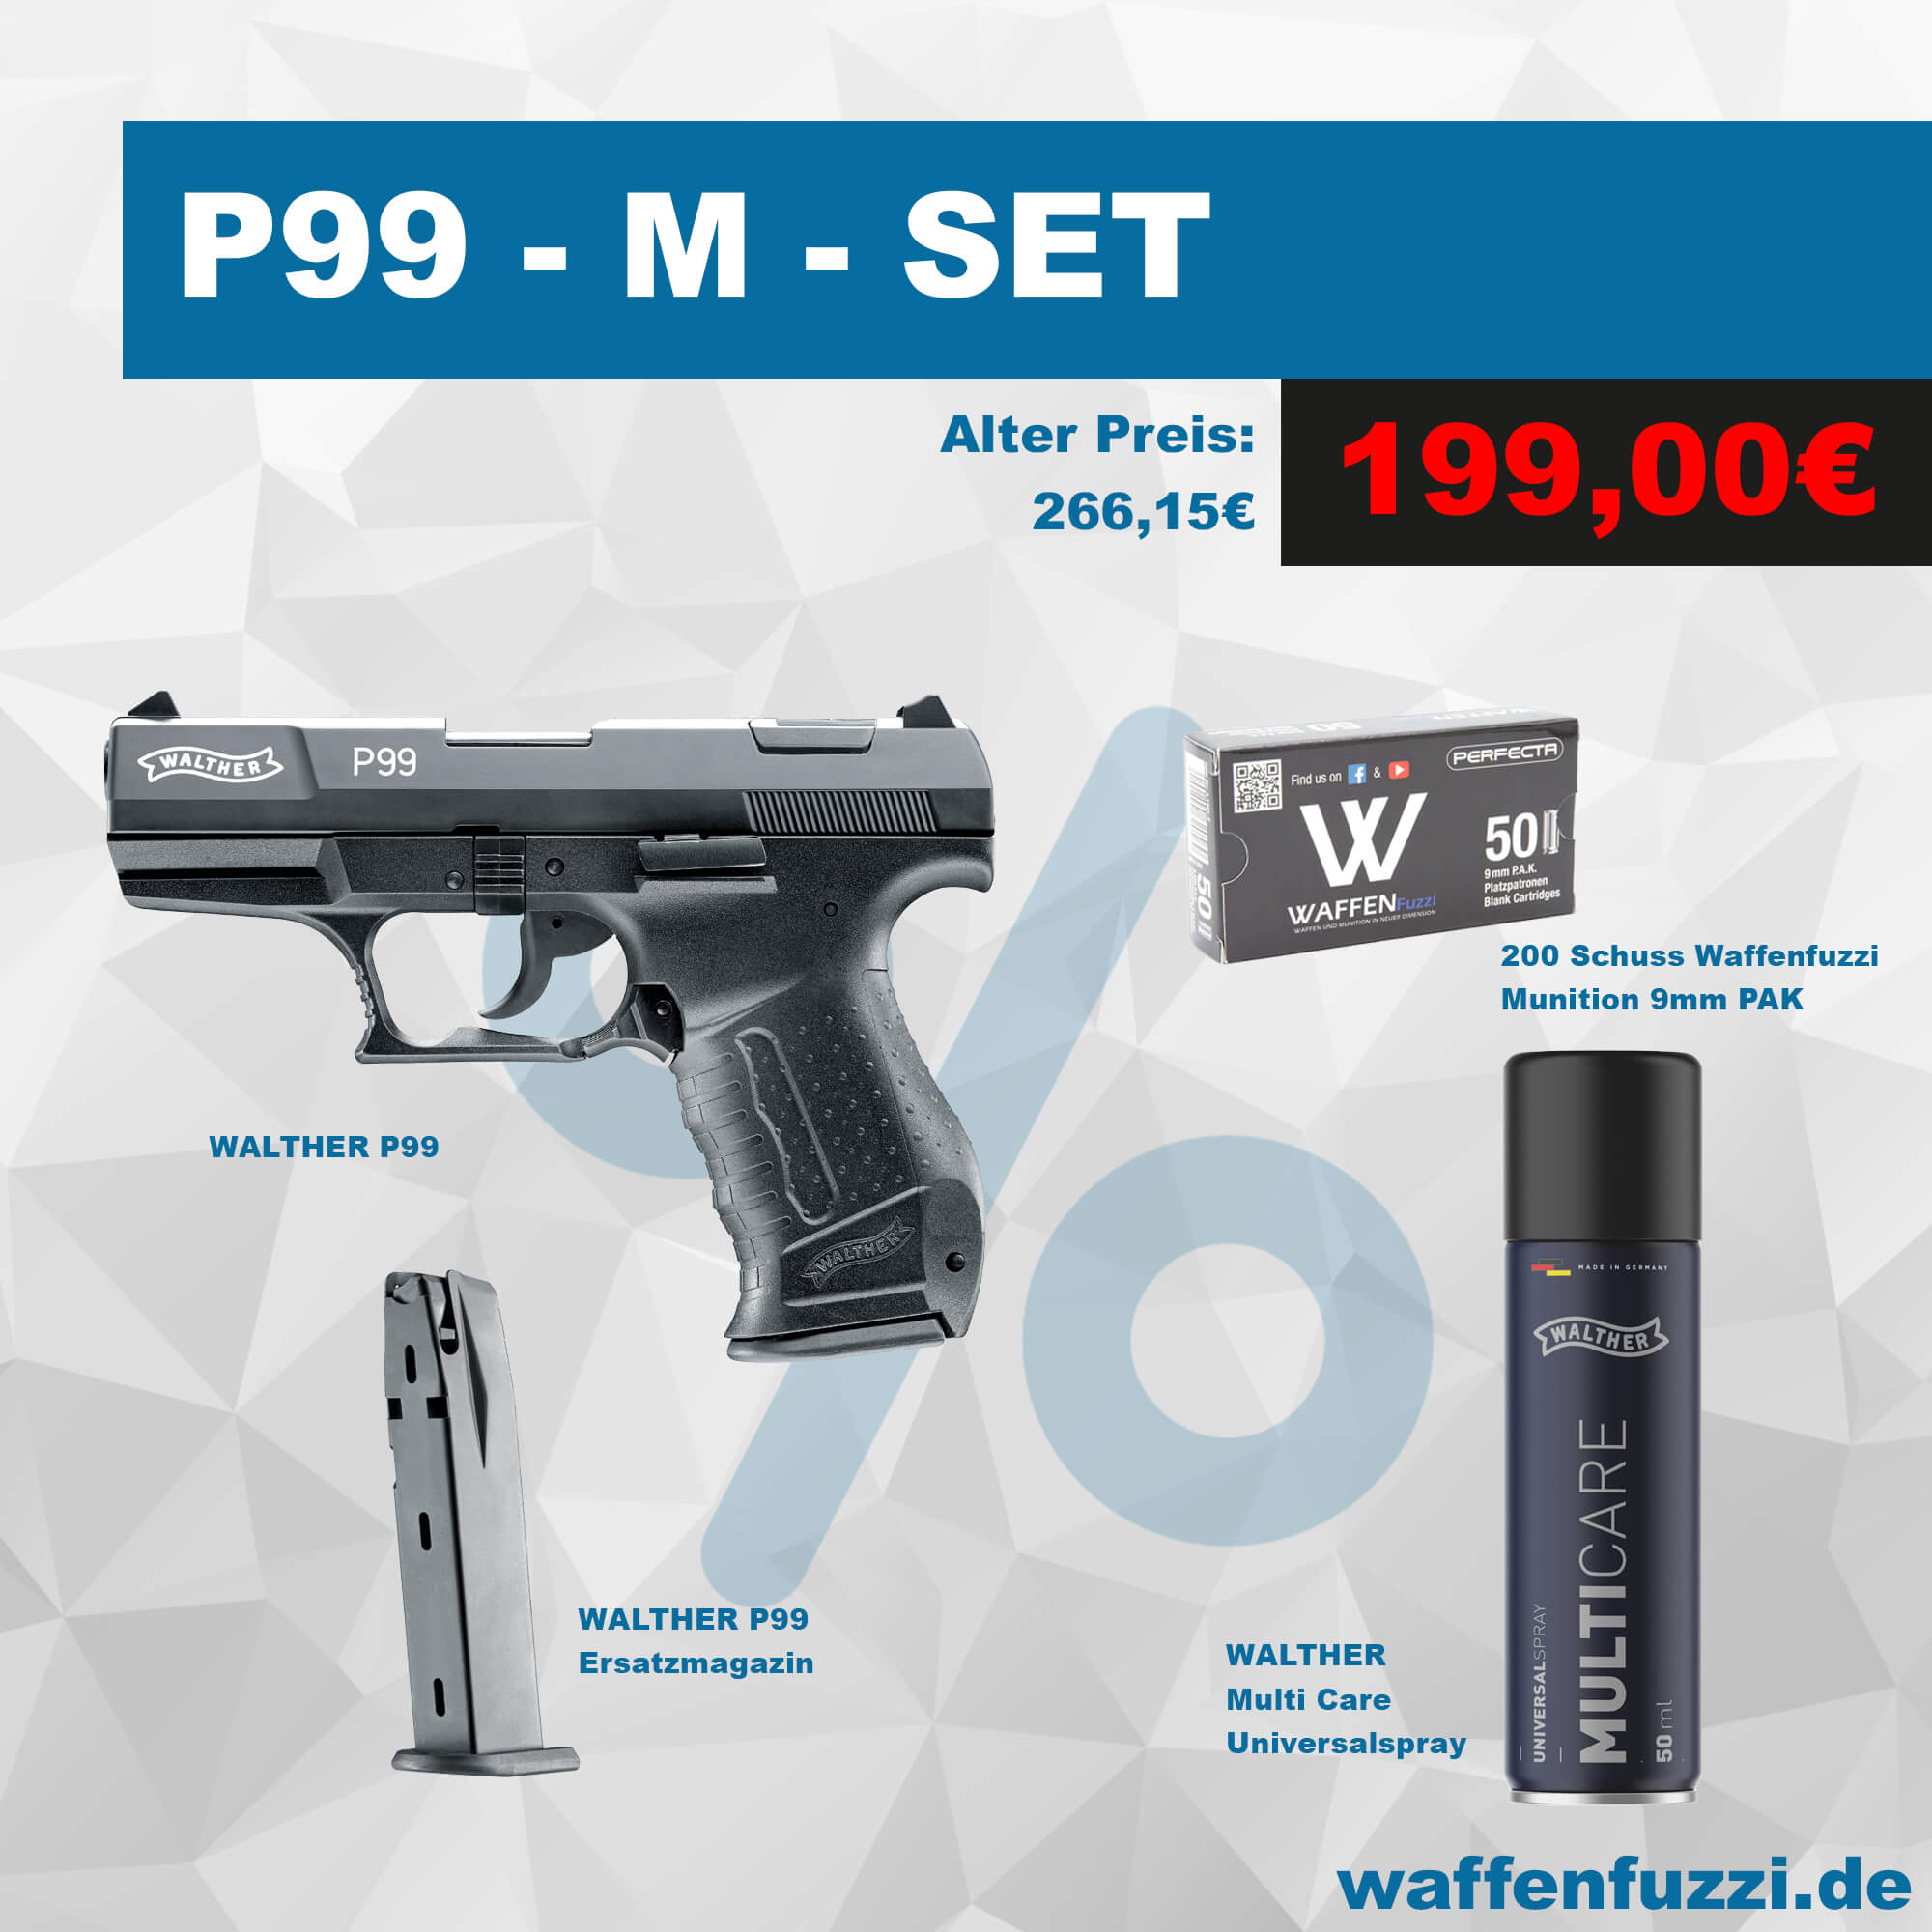 Walther P99 Defense M Set. Effektives und gut durchdachtes Selbstverteidigungs-Set. Über 30% sparen.